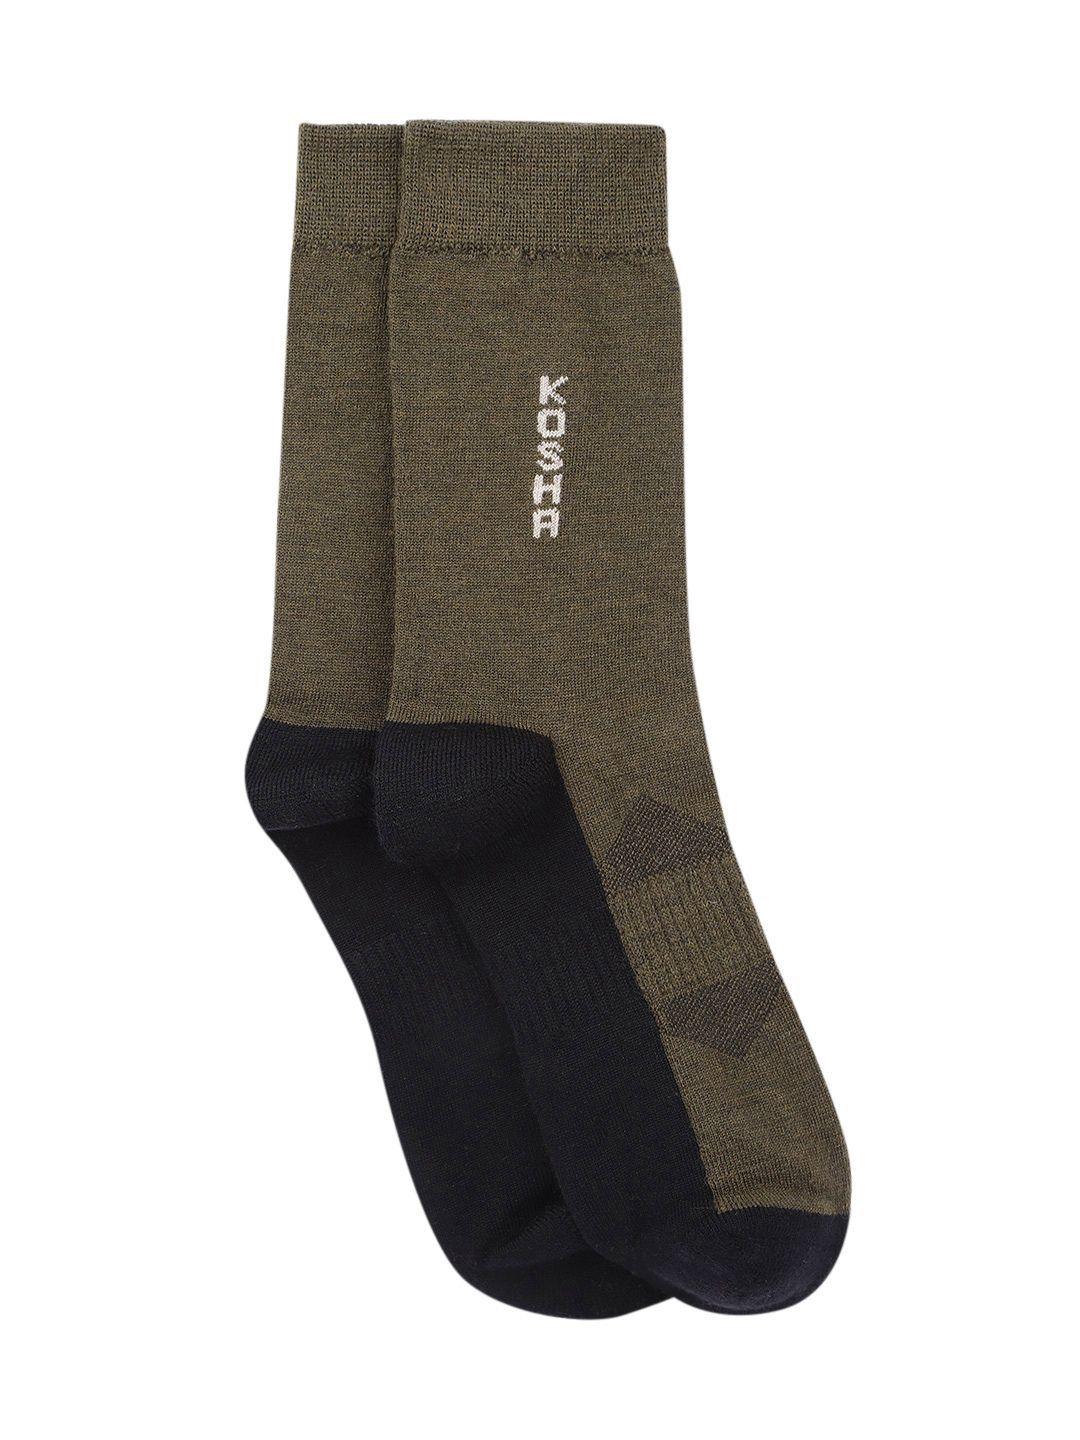 kosha men pack of 2 olive green & black merino wool regular length warm technical socks